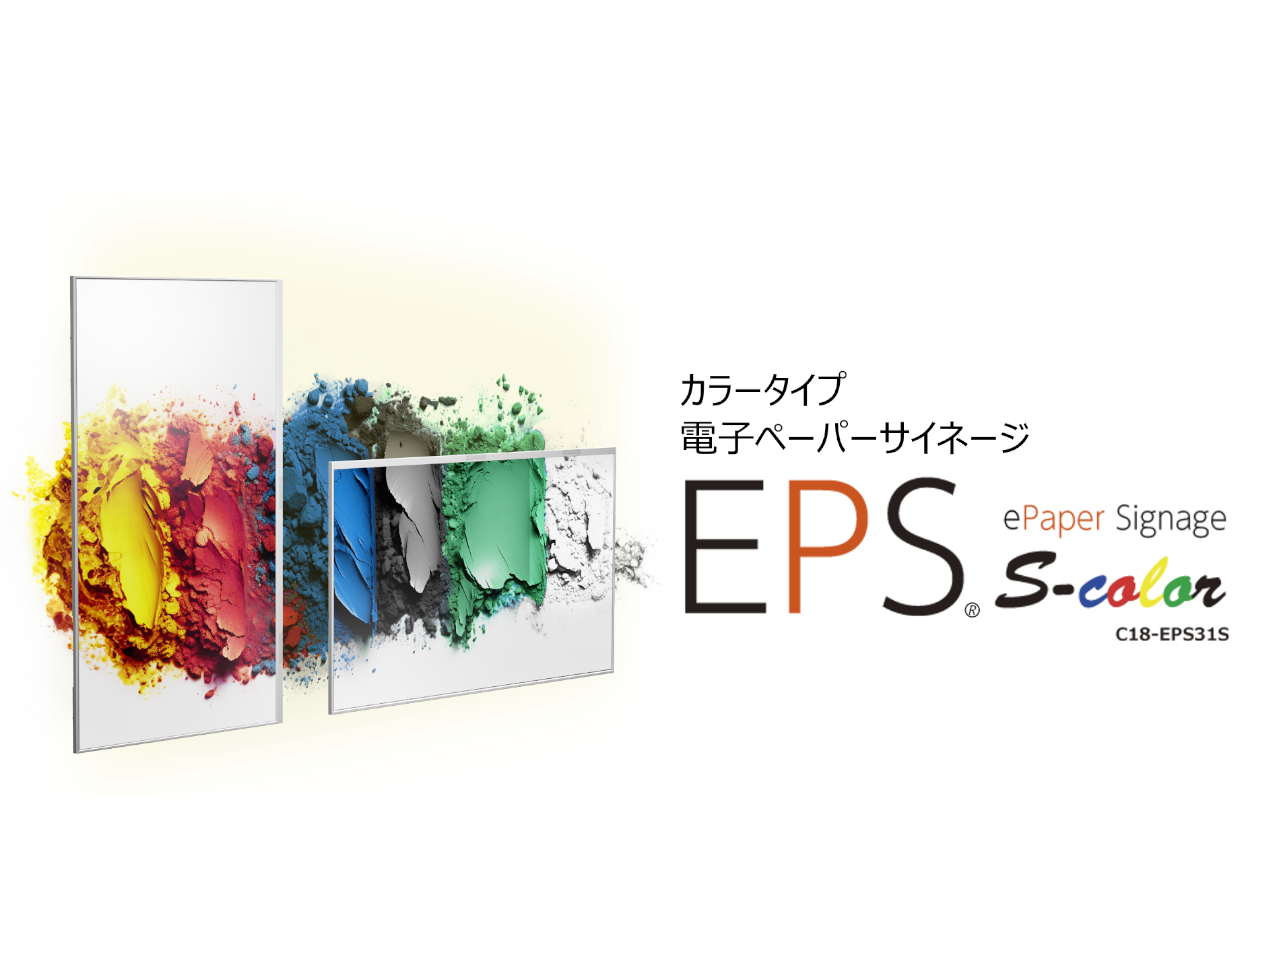 【プレスリリース】新製品情報「EPS s-color」